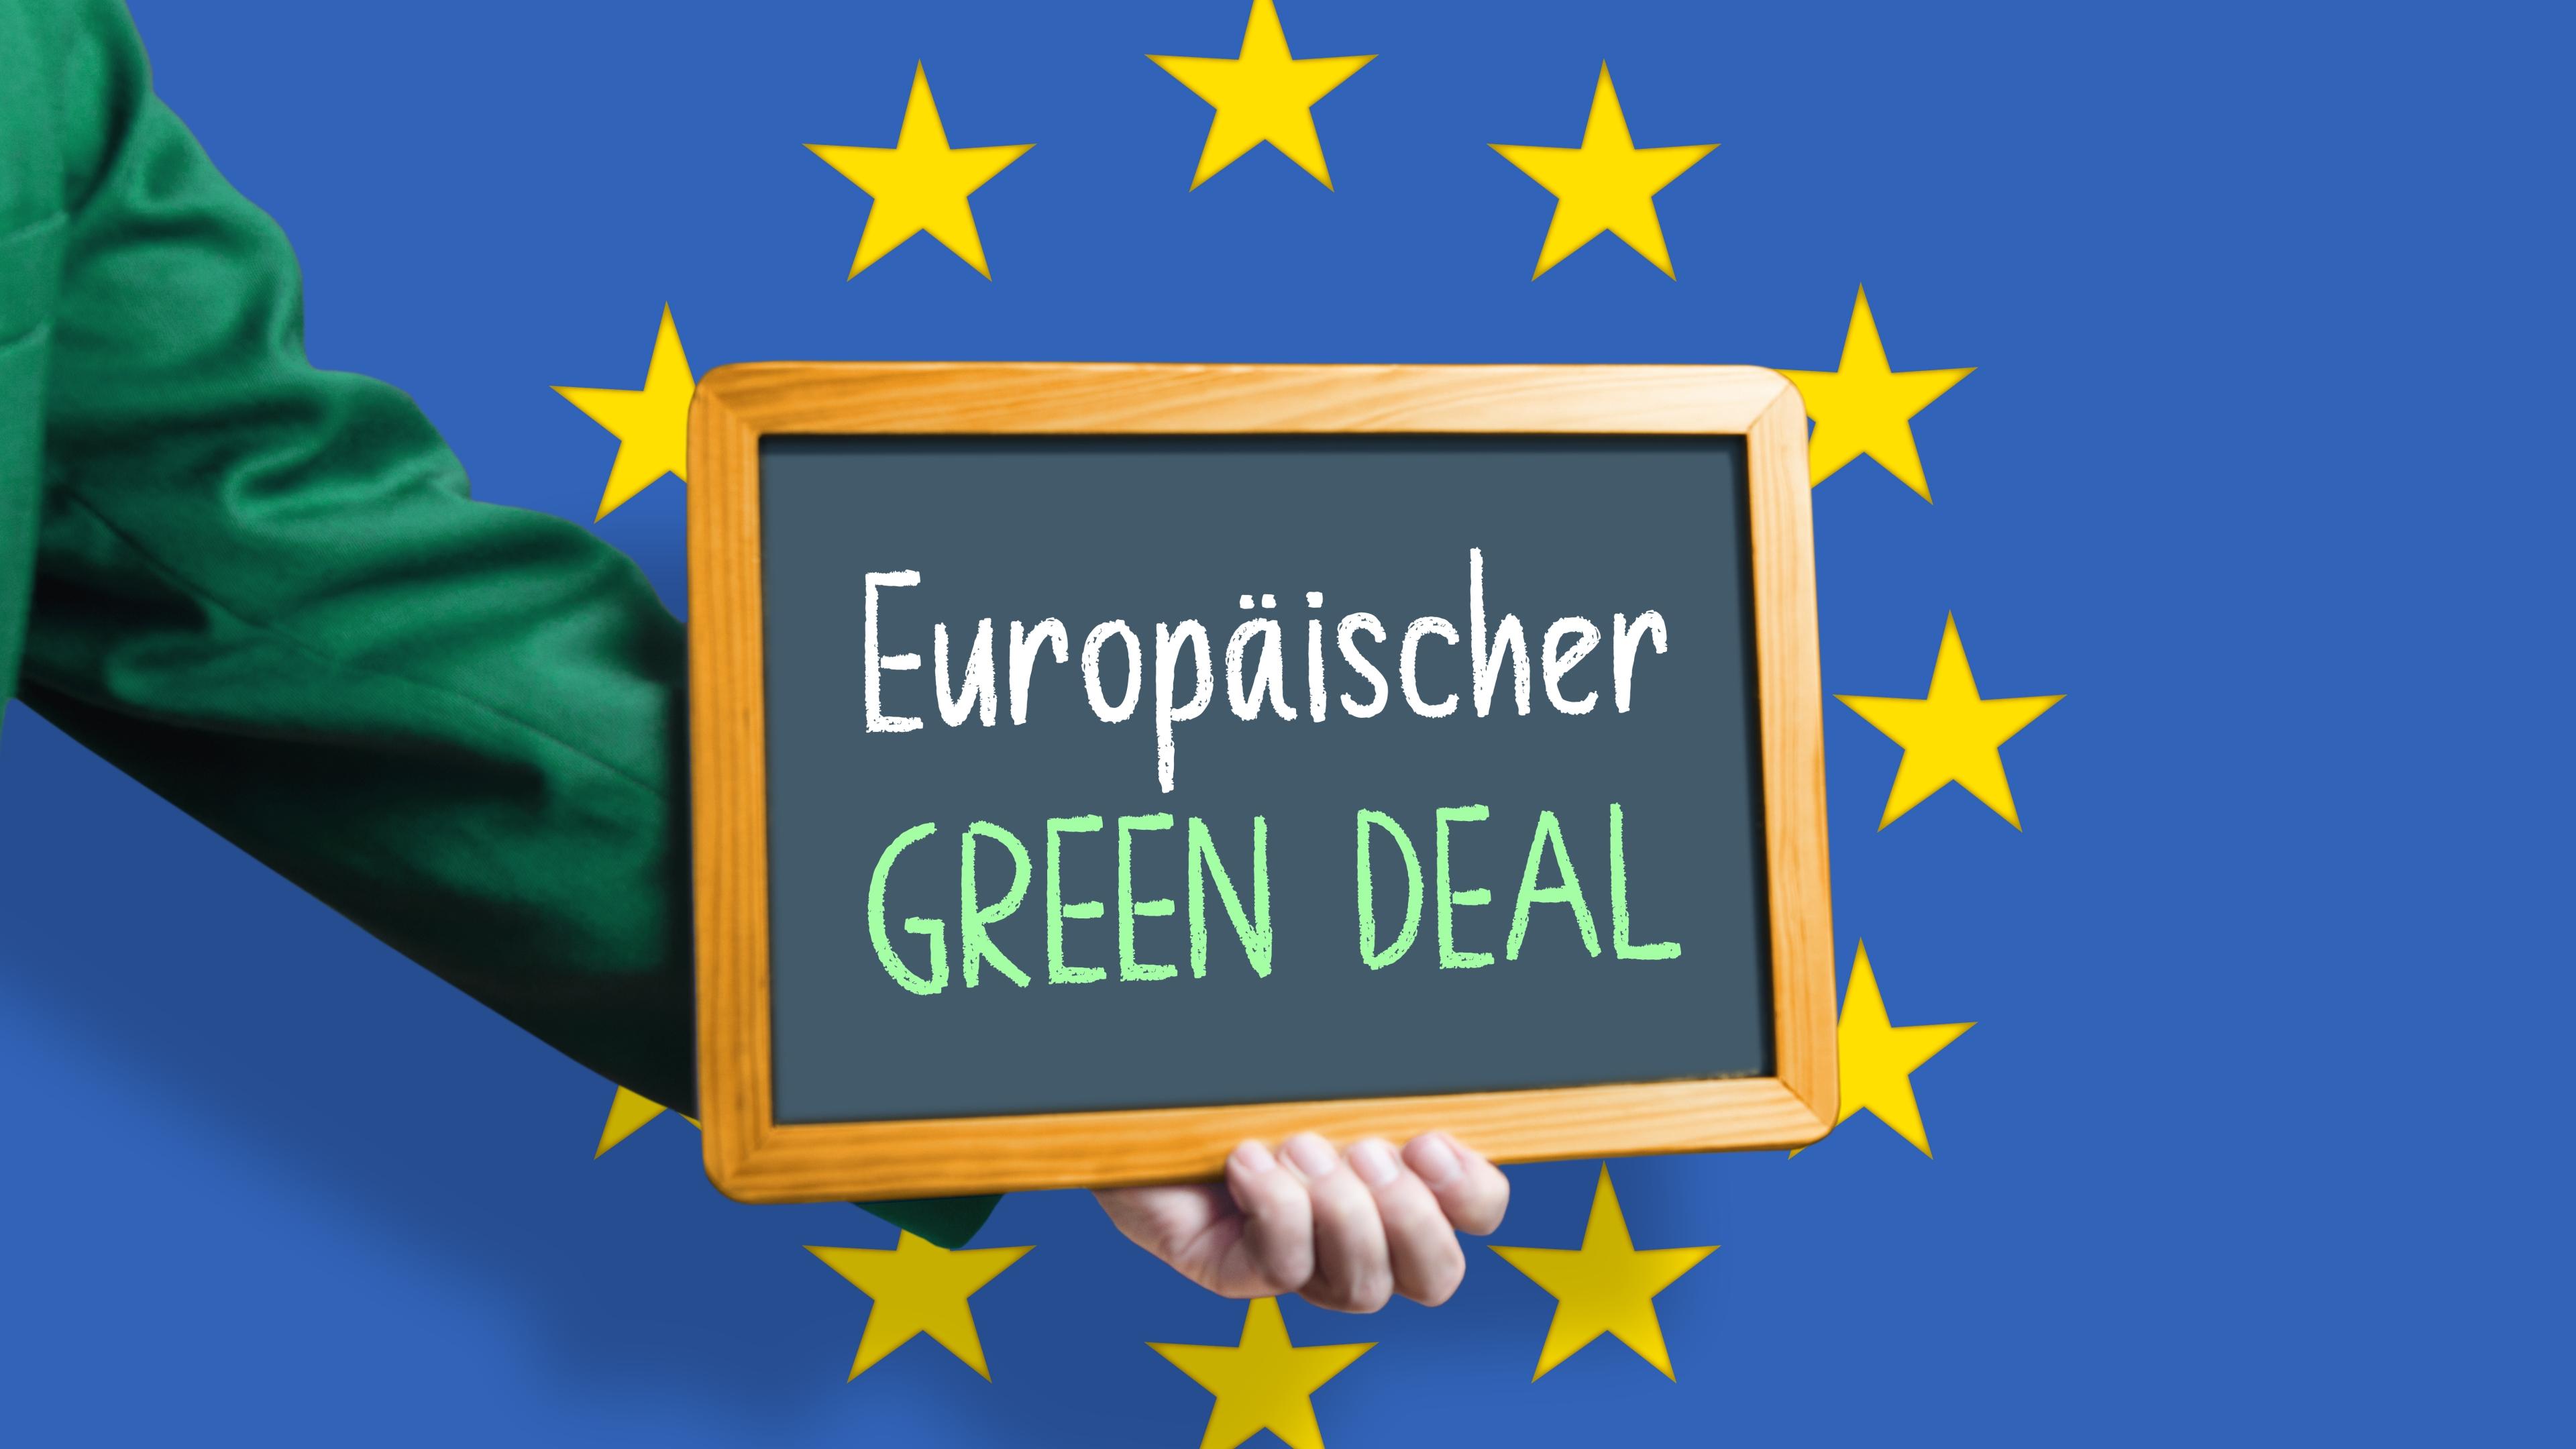 Ein grün bekleideter Arm hält eine Tafel mit Aufschrift "Europäischer Green Deal!" in den EU-Sternenkreis vor blaubem Hintergrund